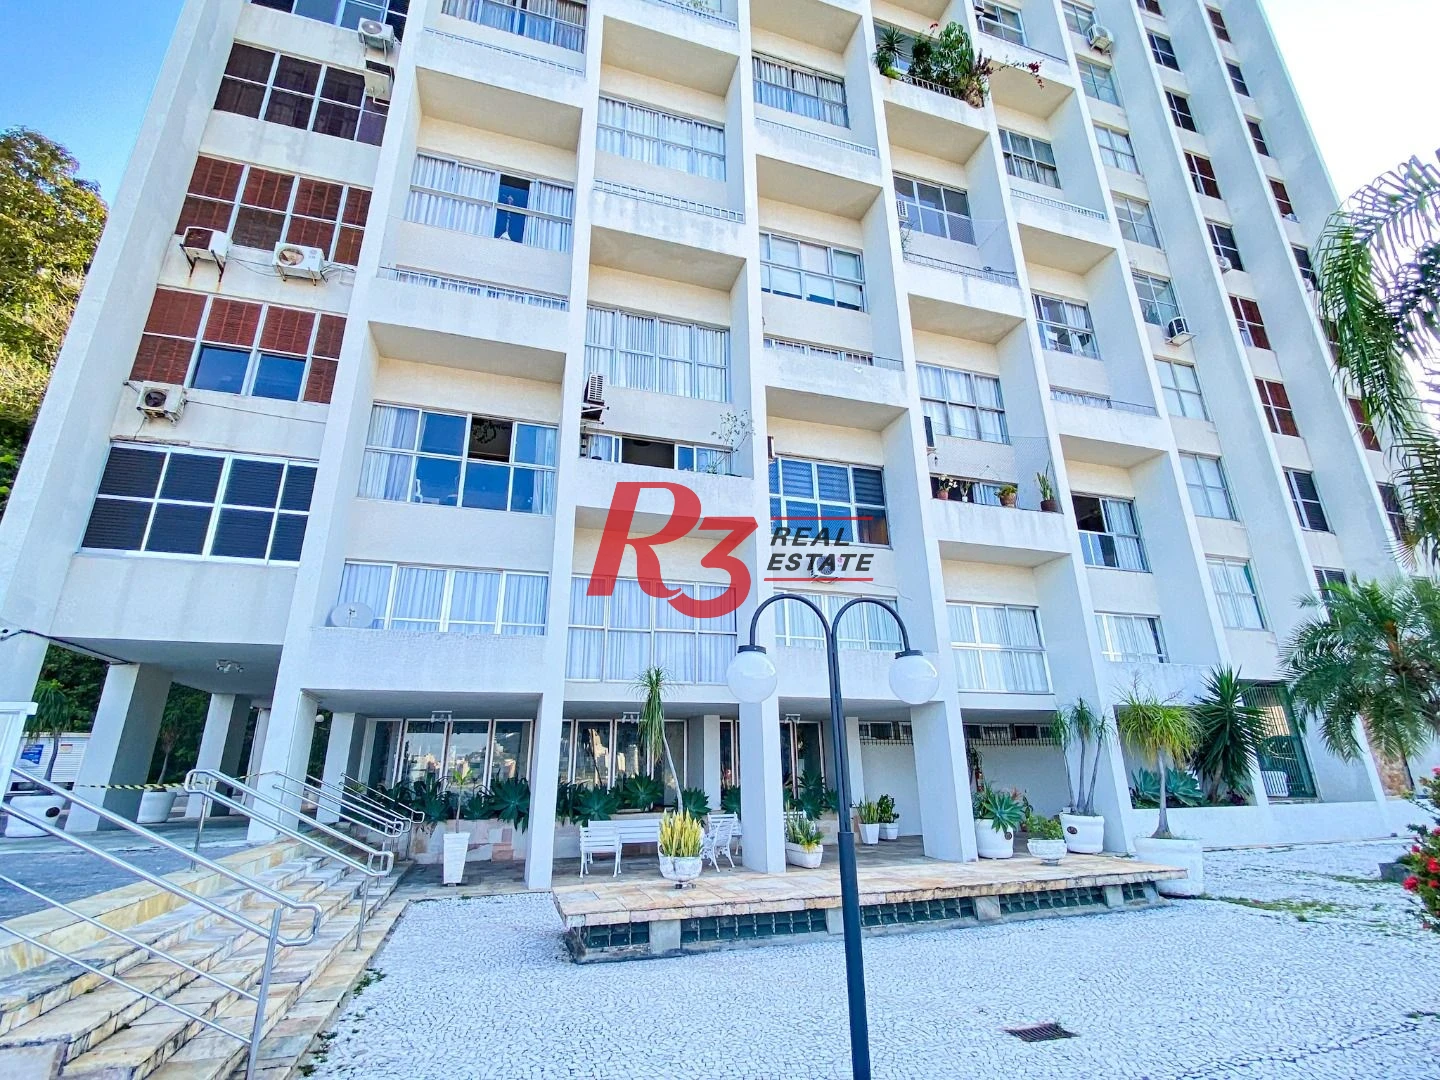 Apartamento com 4 dormitórios à venda, 235 m² por R$ 1.600.000,00 - Ilha Porchat - São Vicente/SP